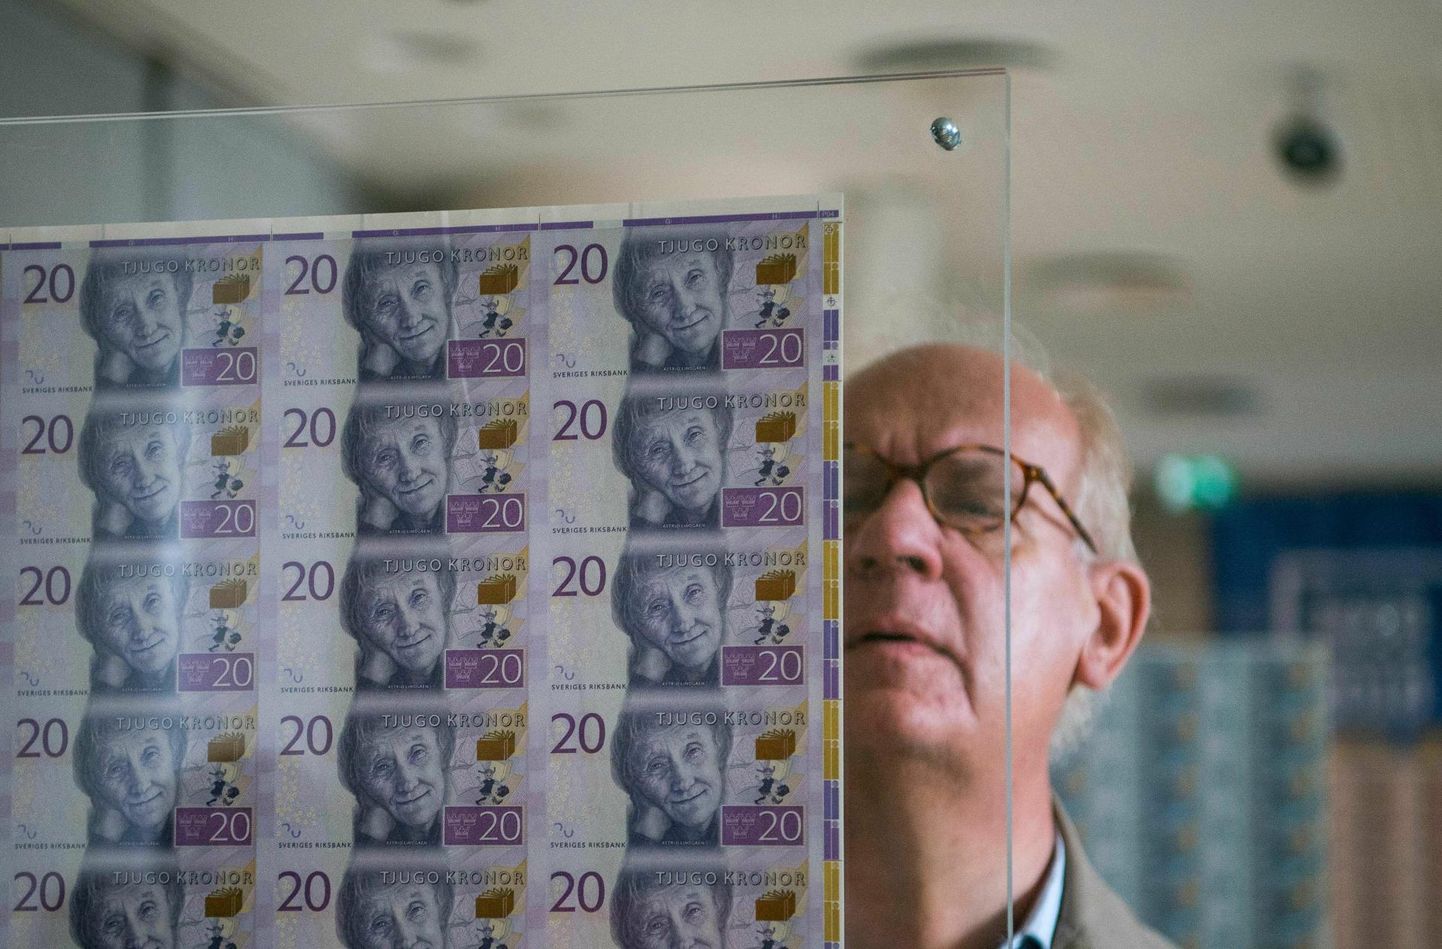 2018. aasta 22. septembril sai Rootsi keskpank 350-aastaseks. Sel puhul oli Riksbankis avatud uste päev. Fotol uurib külastaja Rootsi 20-krooniseid rahatähti.